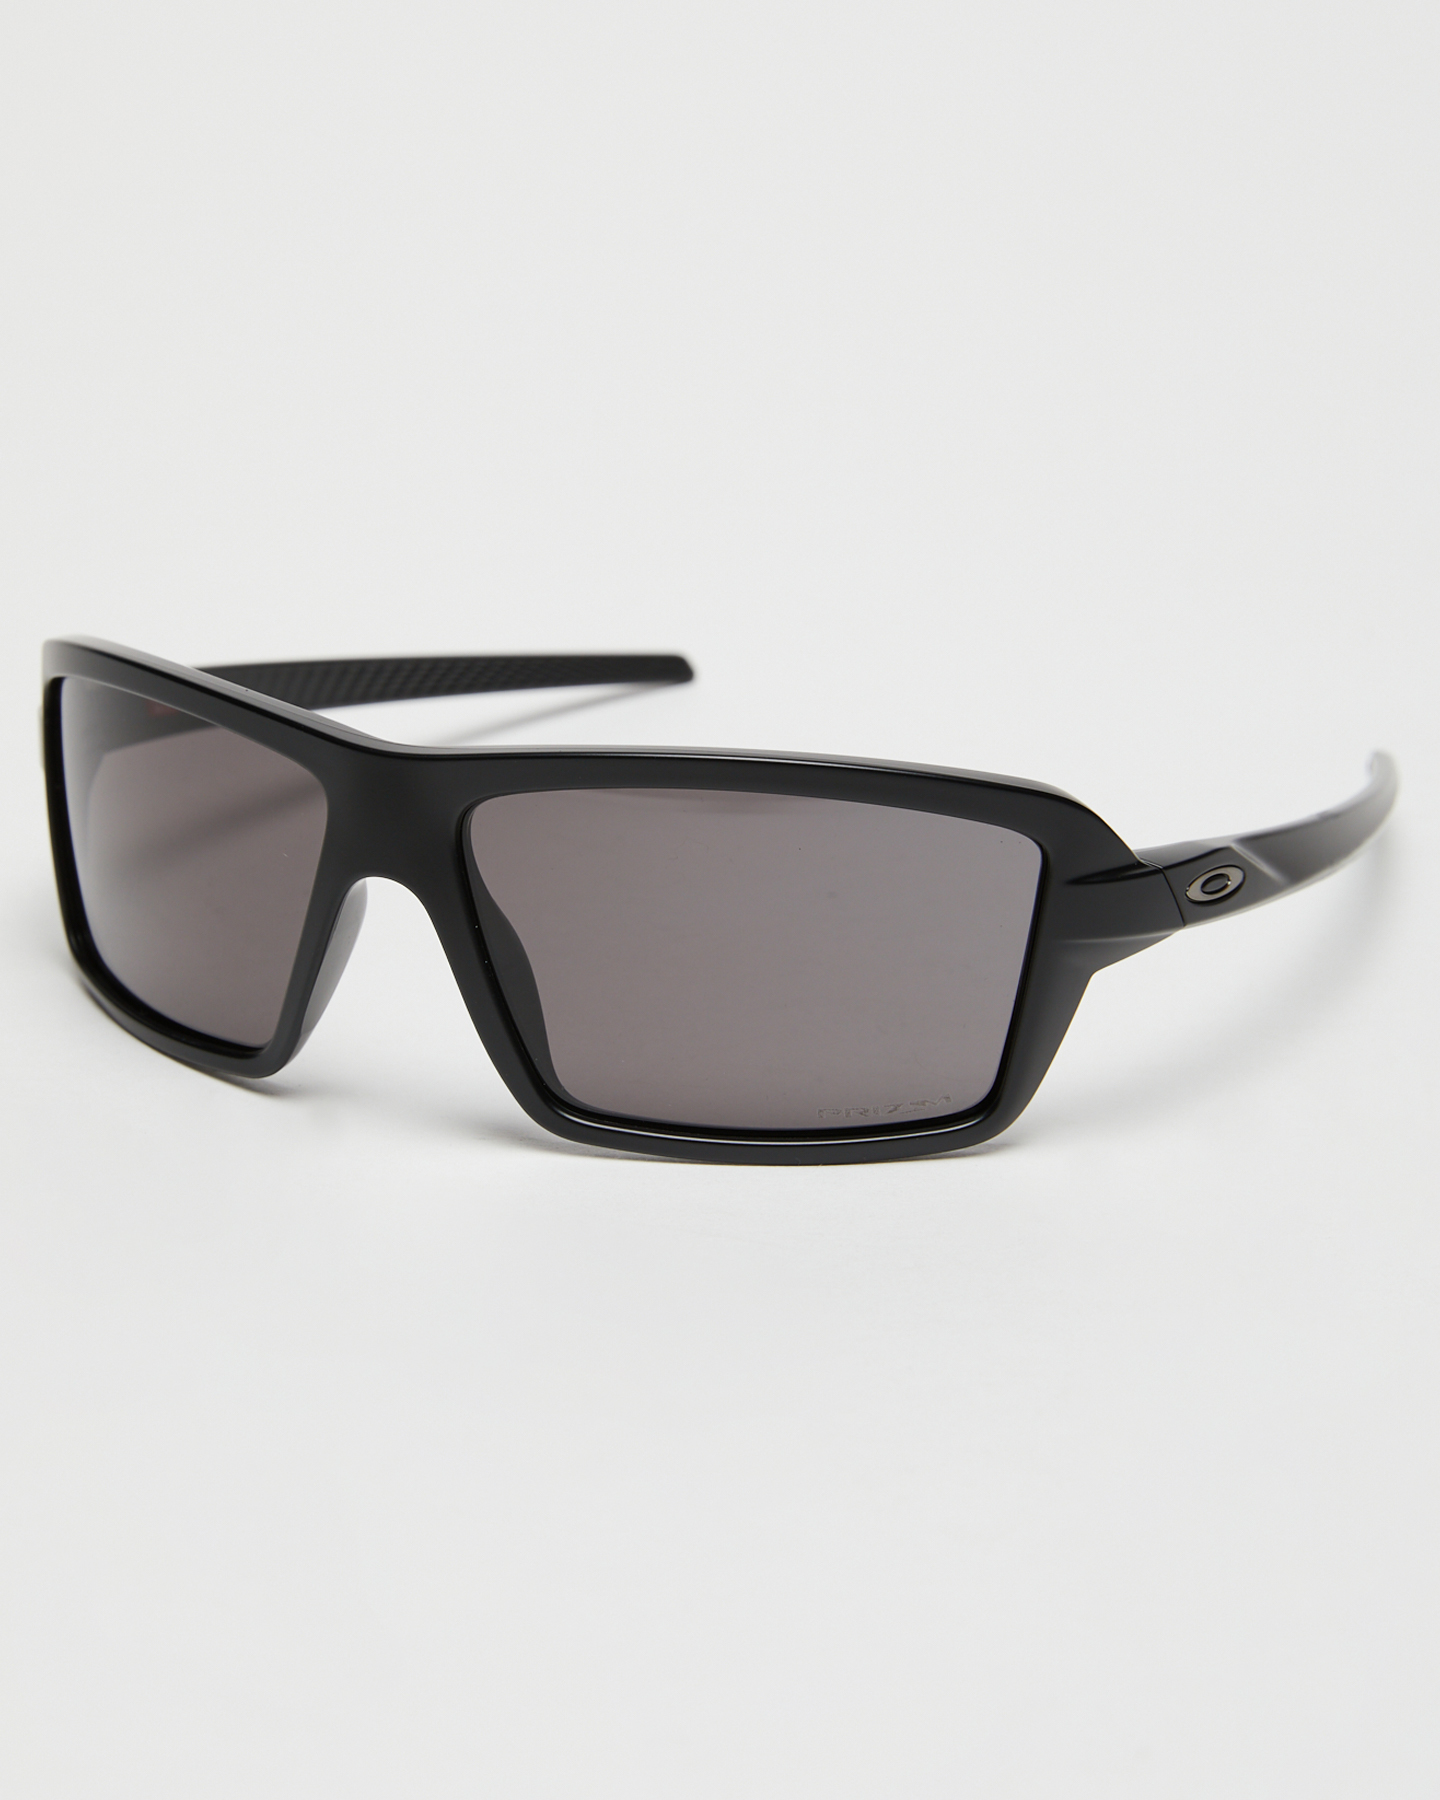 Oakley Cables Sunglasses - Matte Black SurfStitch